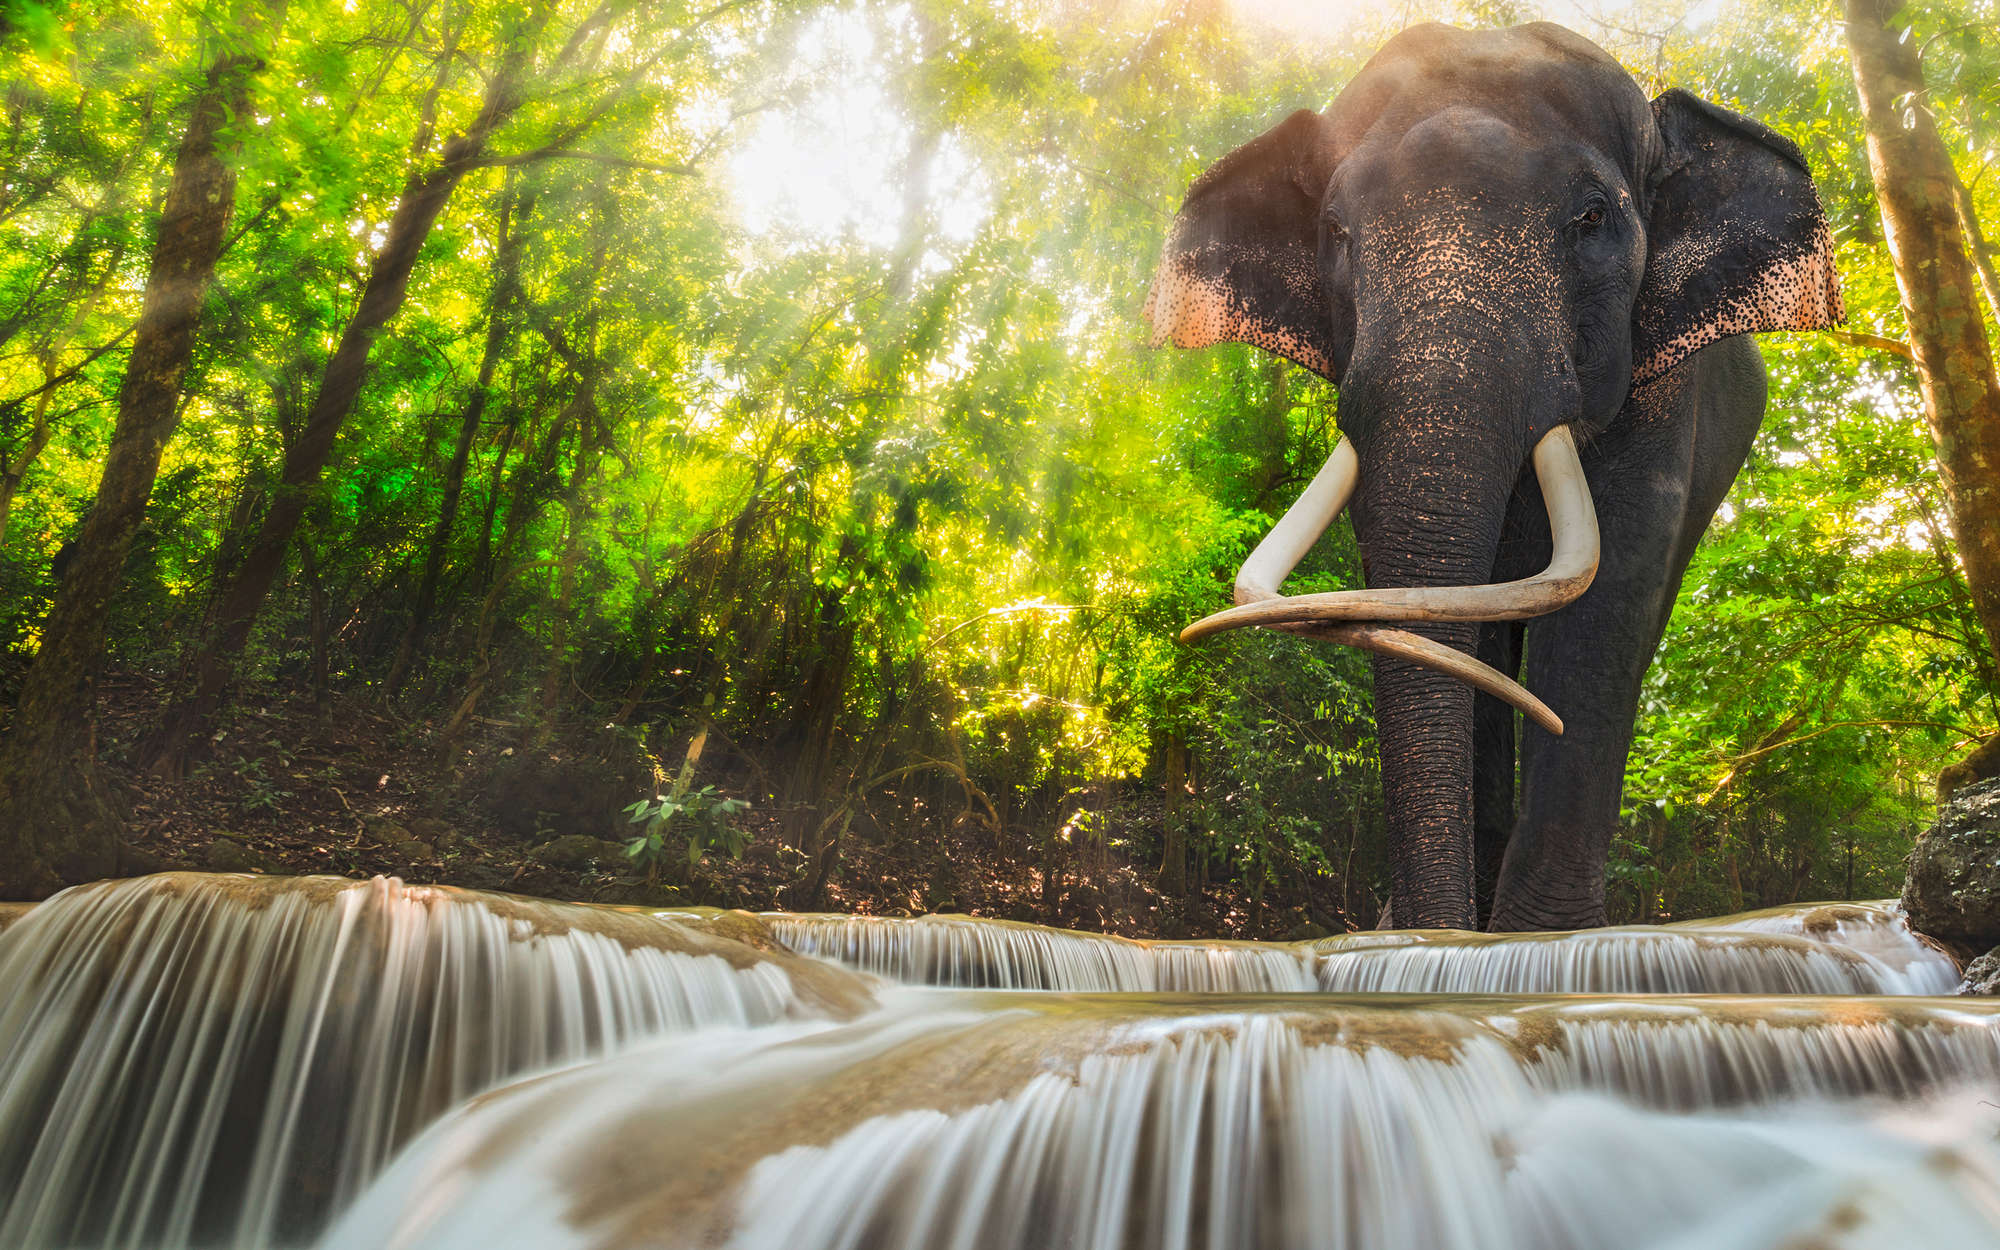             Natur Fototapete Elefant am Wasserfall – Perlmutt Glattvlies
        